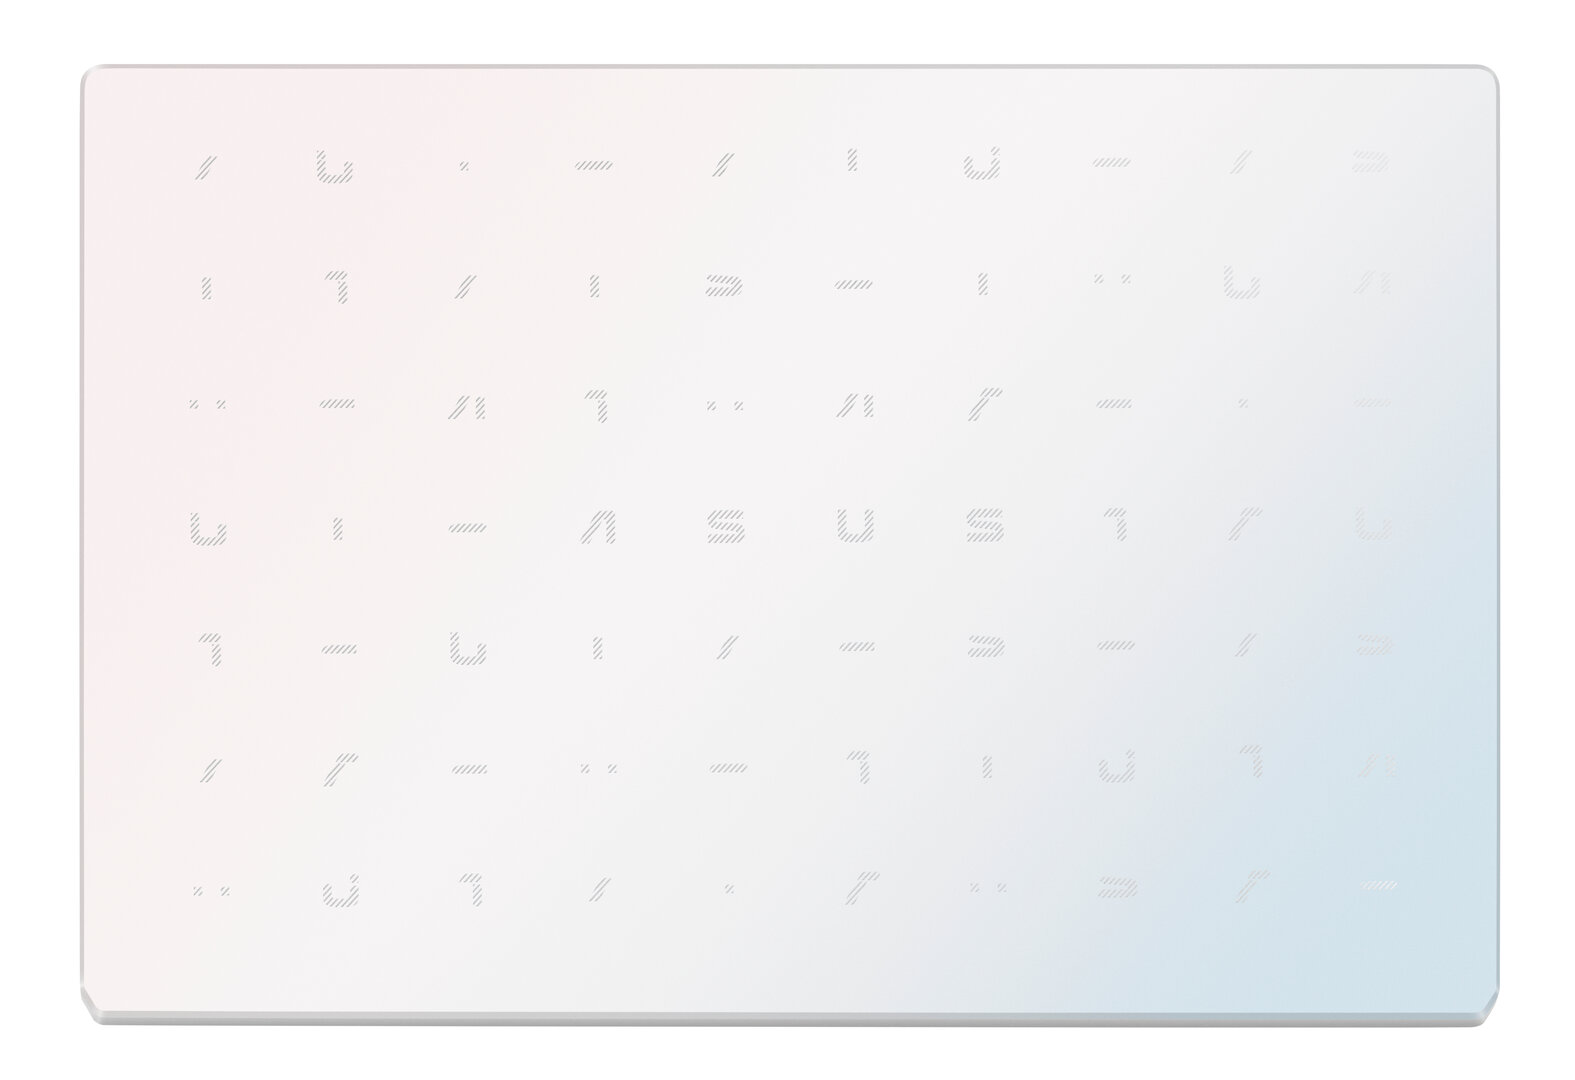 Asus VivoBook 12 (L210) – Dreamy White